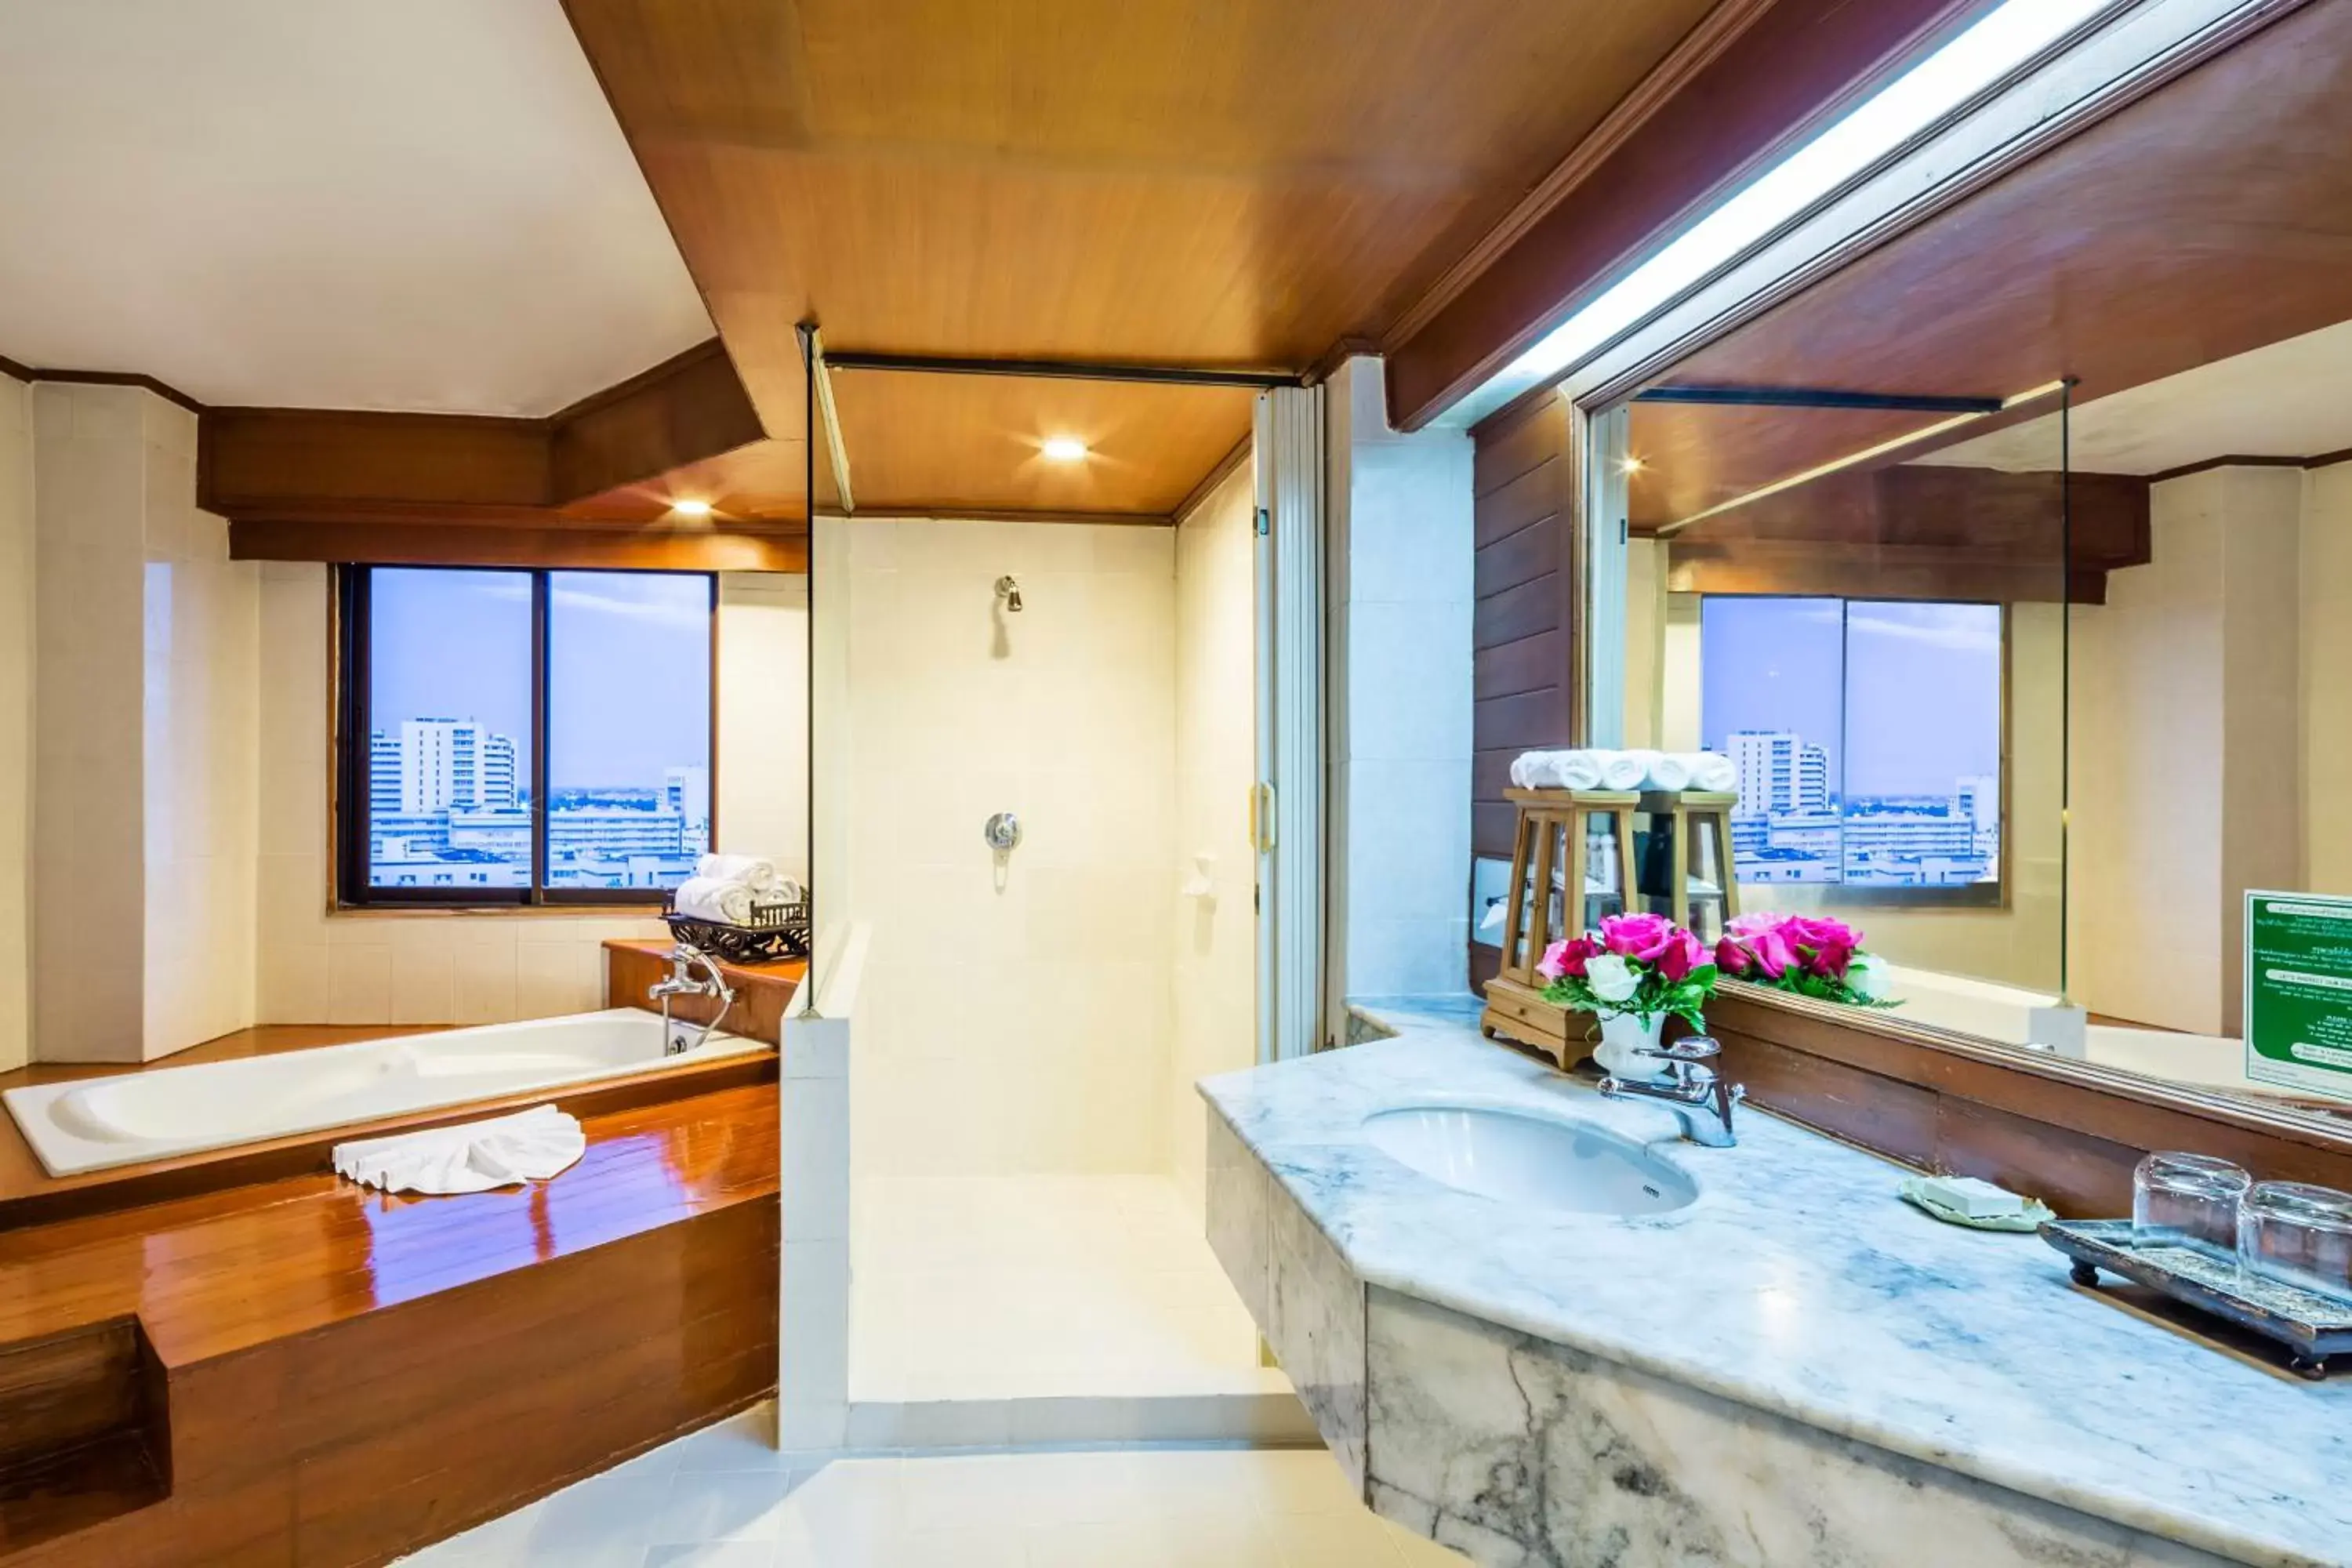 Bathroom in Lotus Pang Suan Kaew Hotel